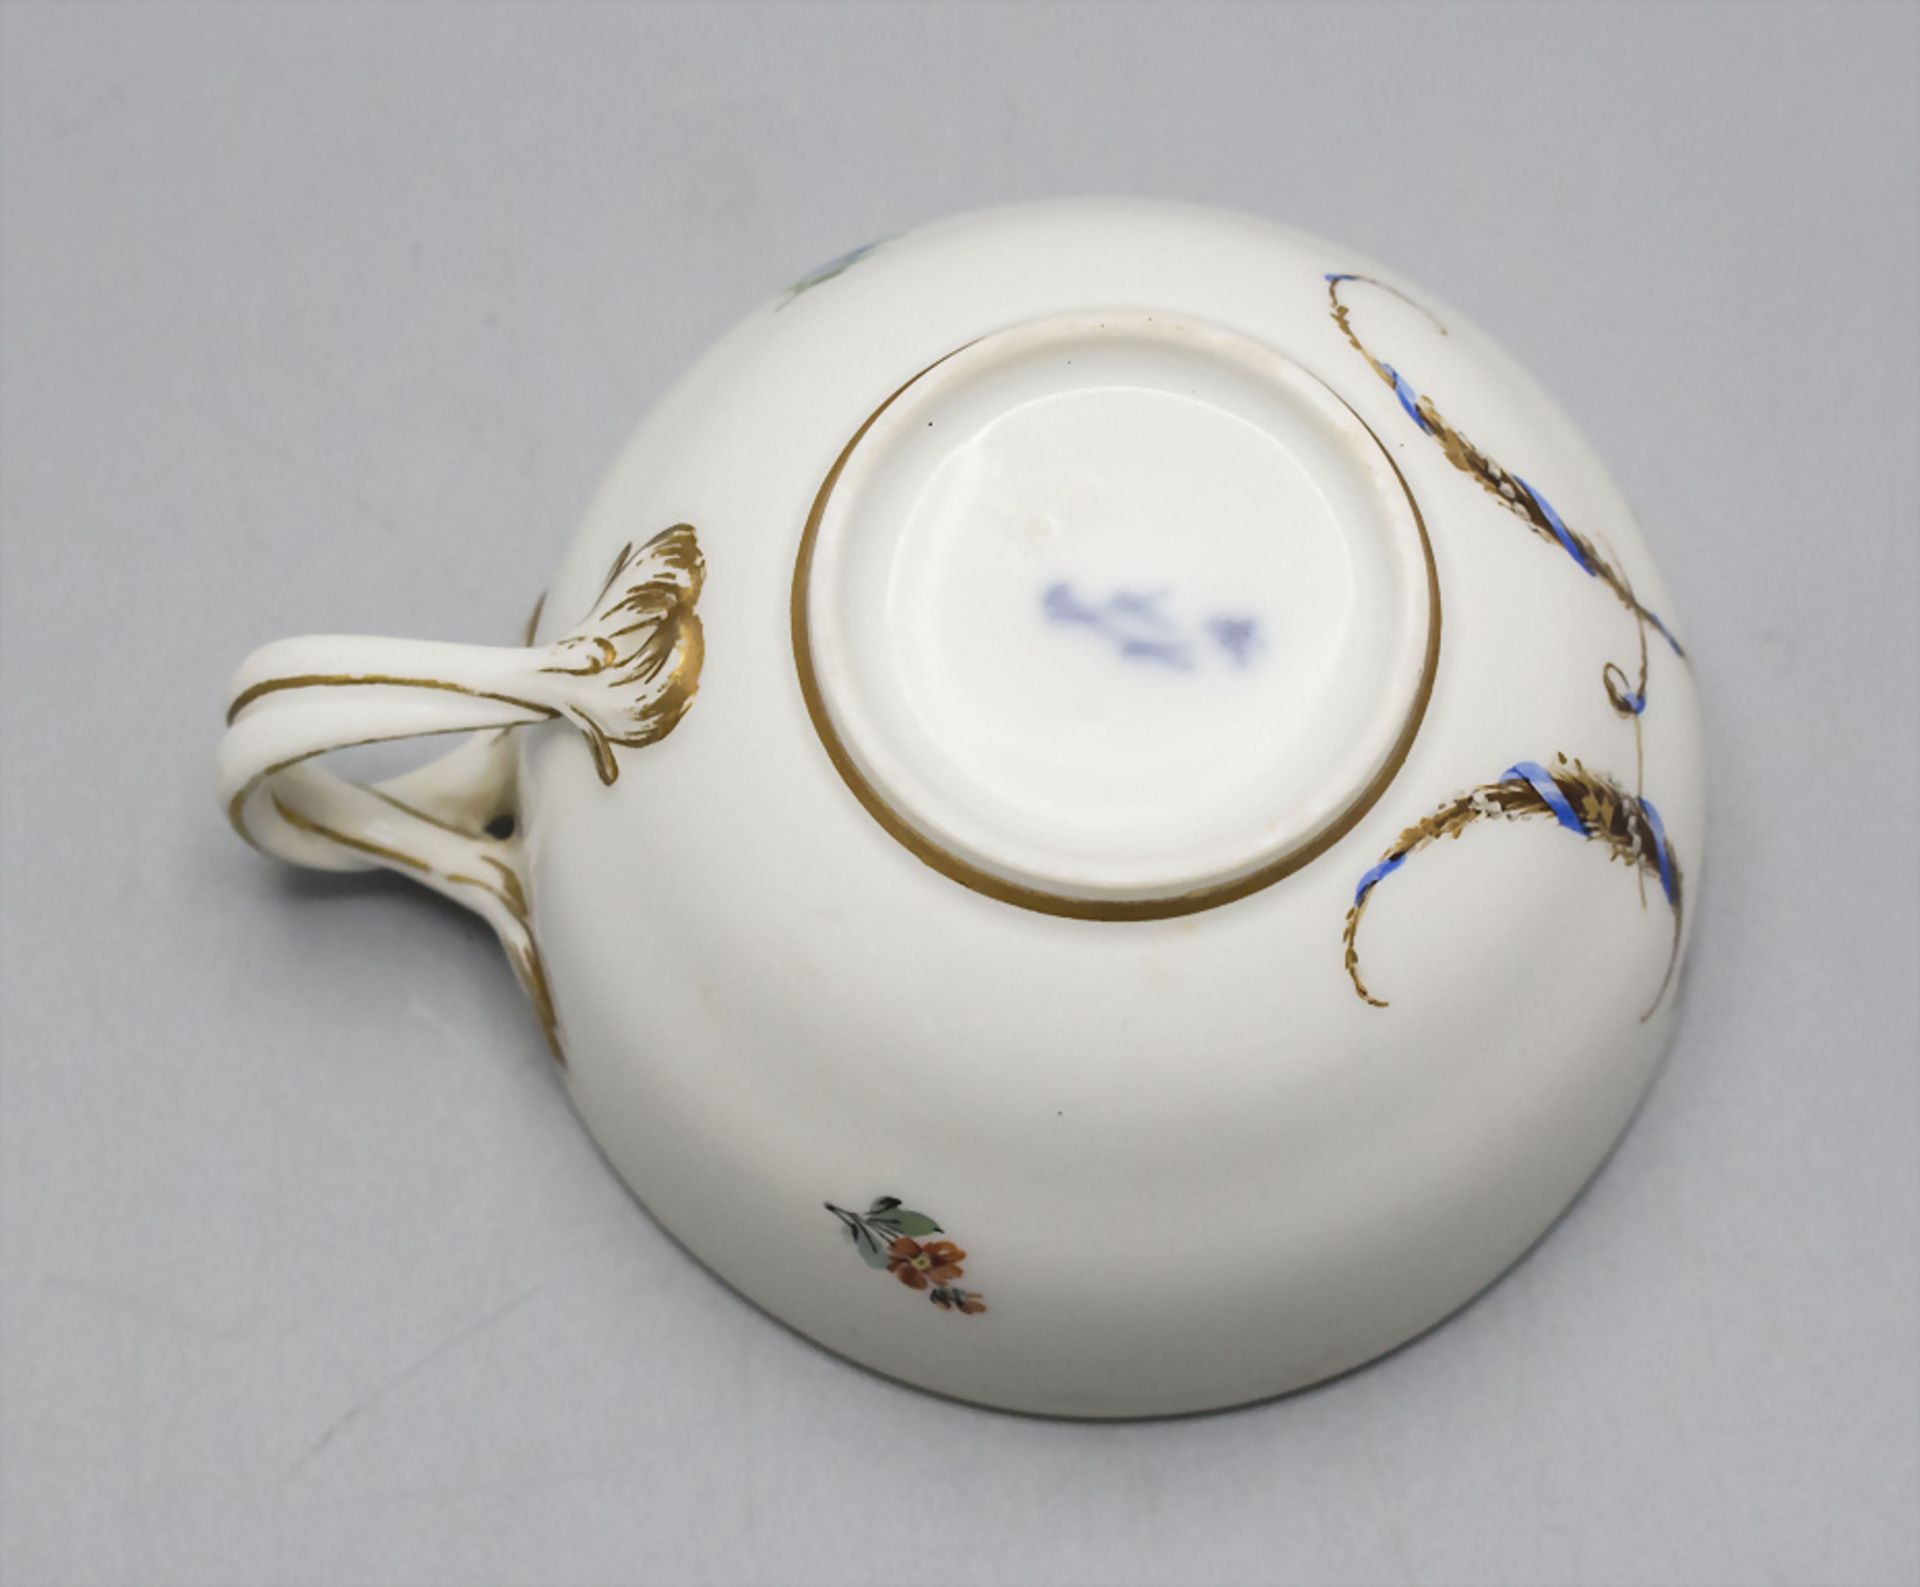 2 Porzellan Tassen mit Untertassen / Two cups with saucers, Meissen, Marcollini-Zeit 1774-1814 - Bild 7 aus 13